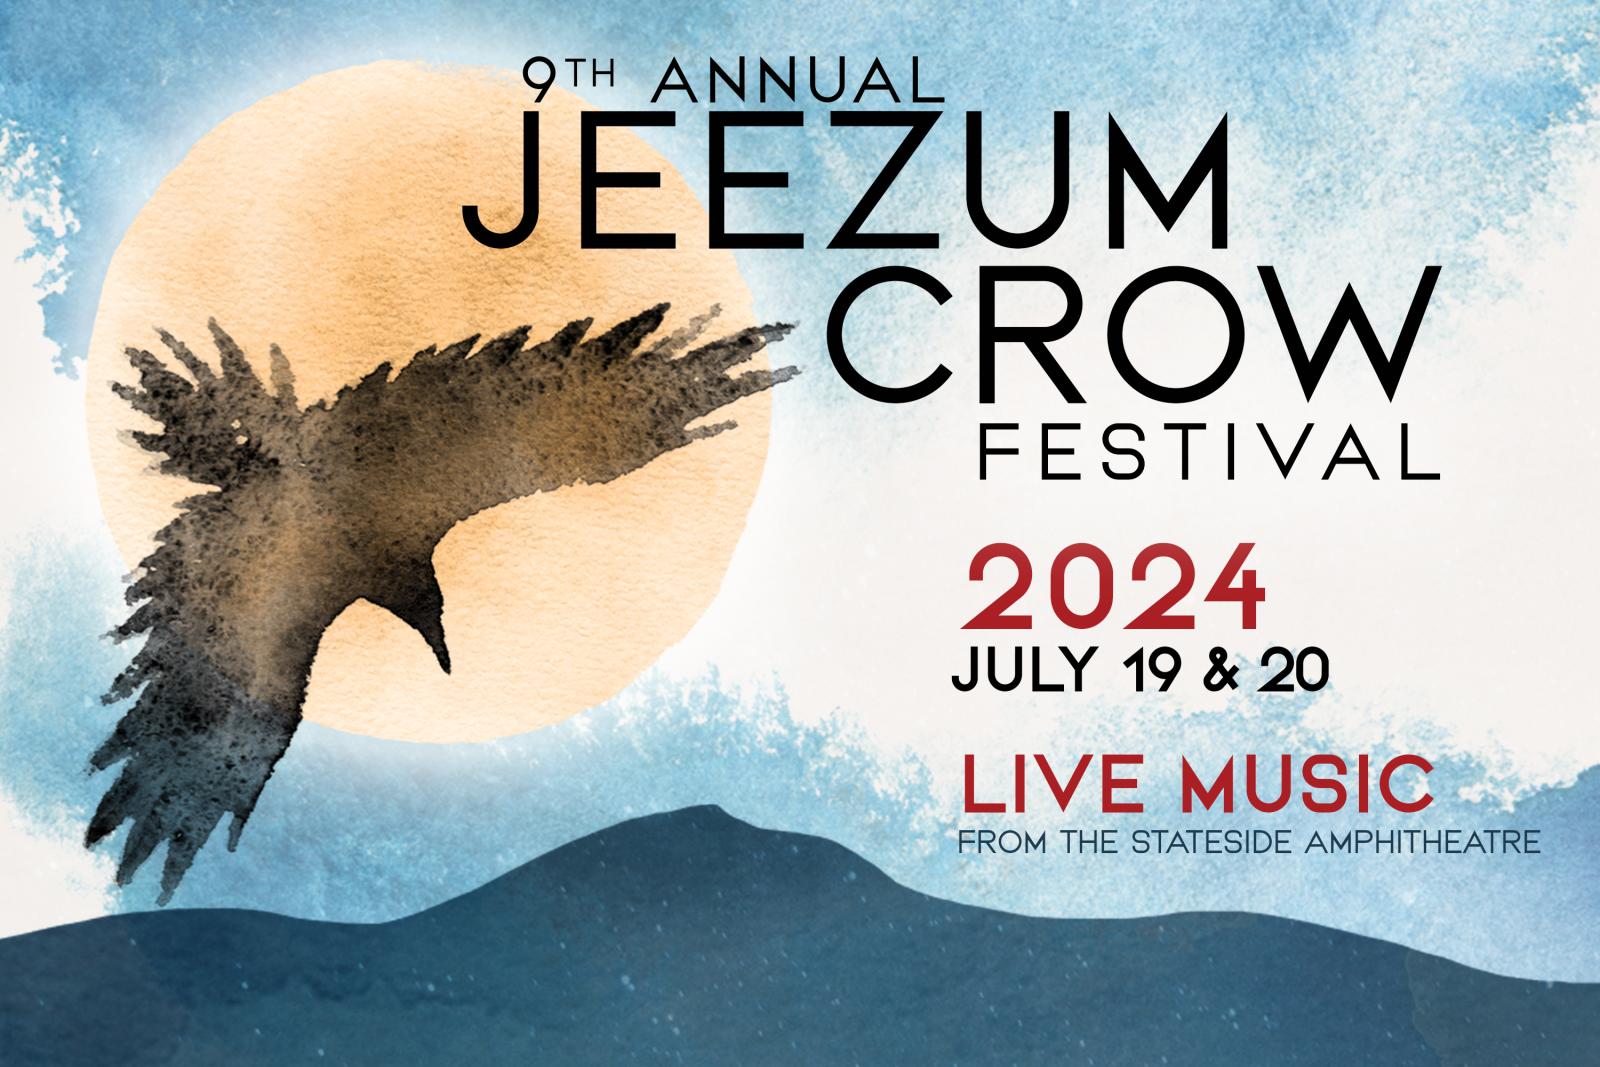 Jeezum Crow 